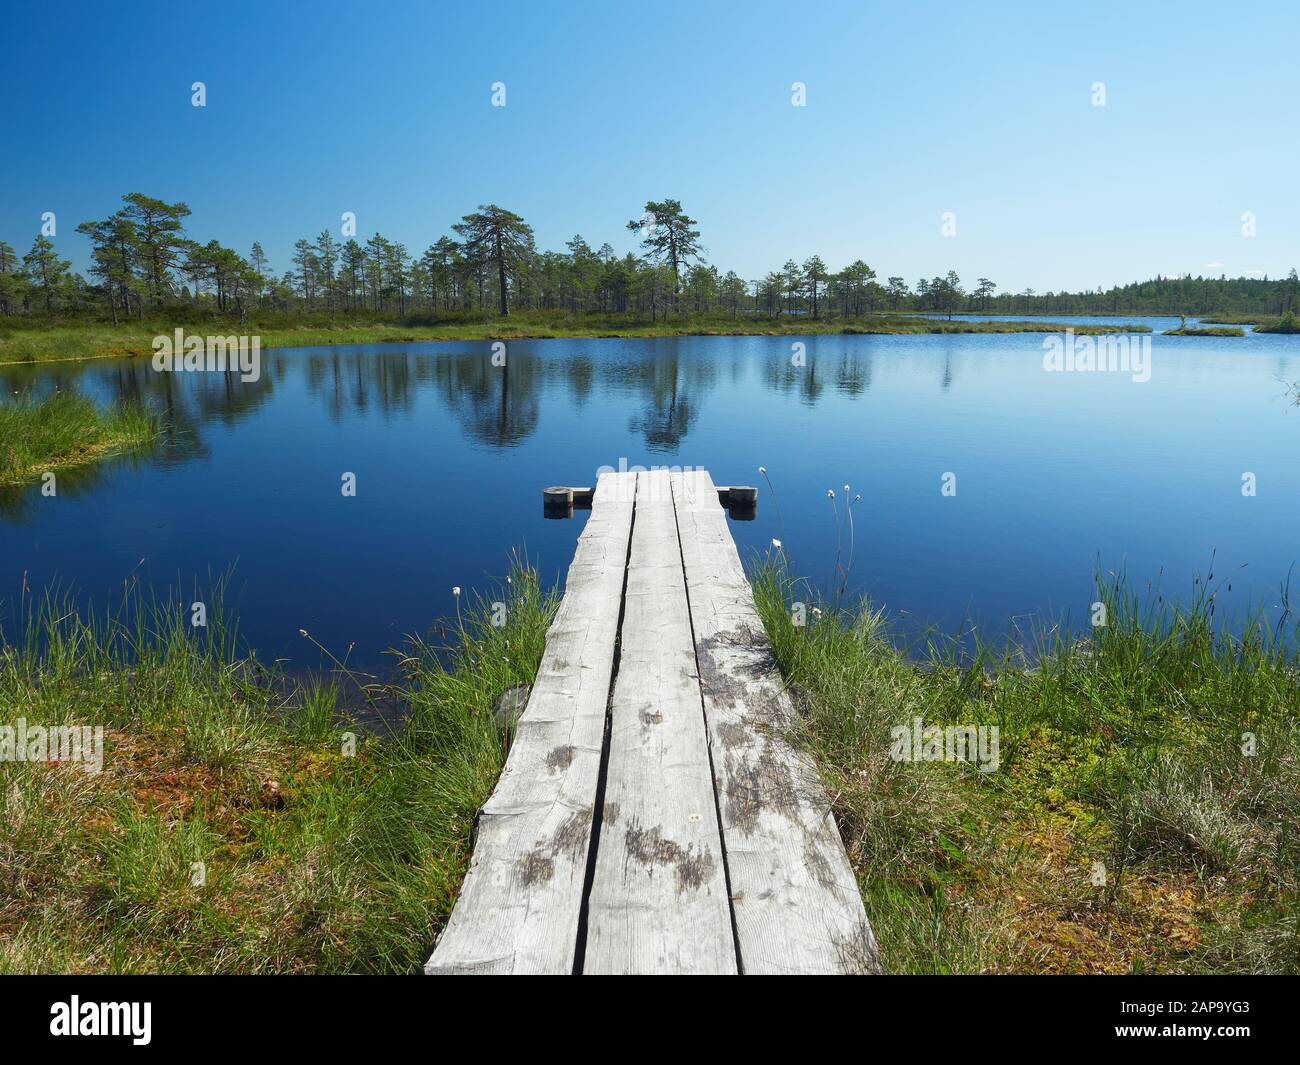 Petit lac sur une chaude journée d'été. Paysage du nord du parc national de Kauhaneva-Pohjankangas en Finlande. Banque D'Images